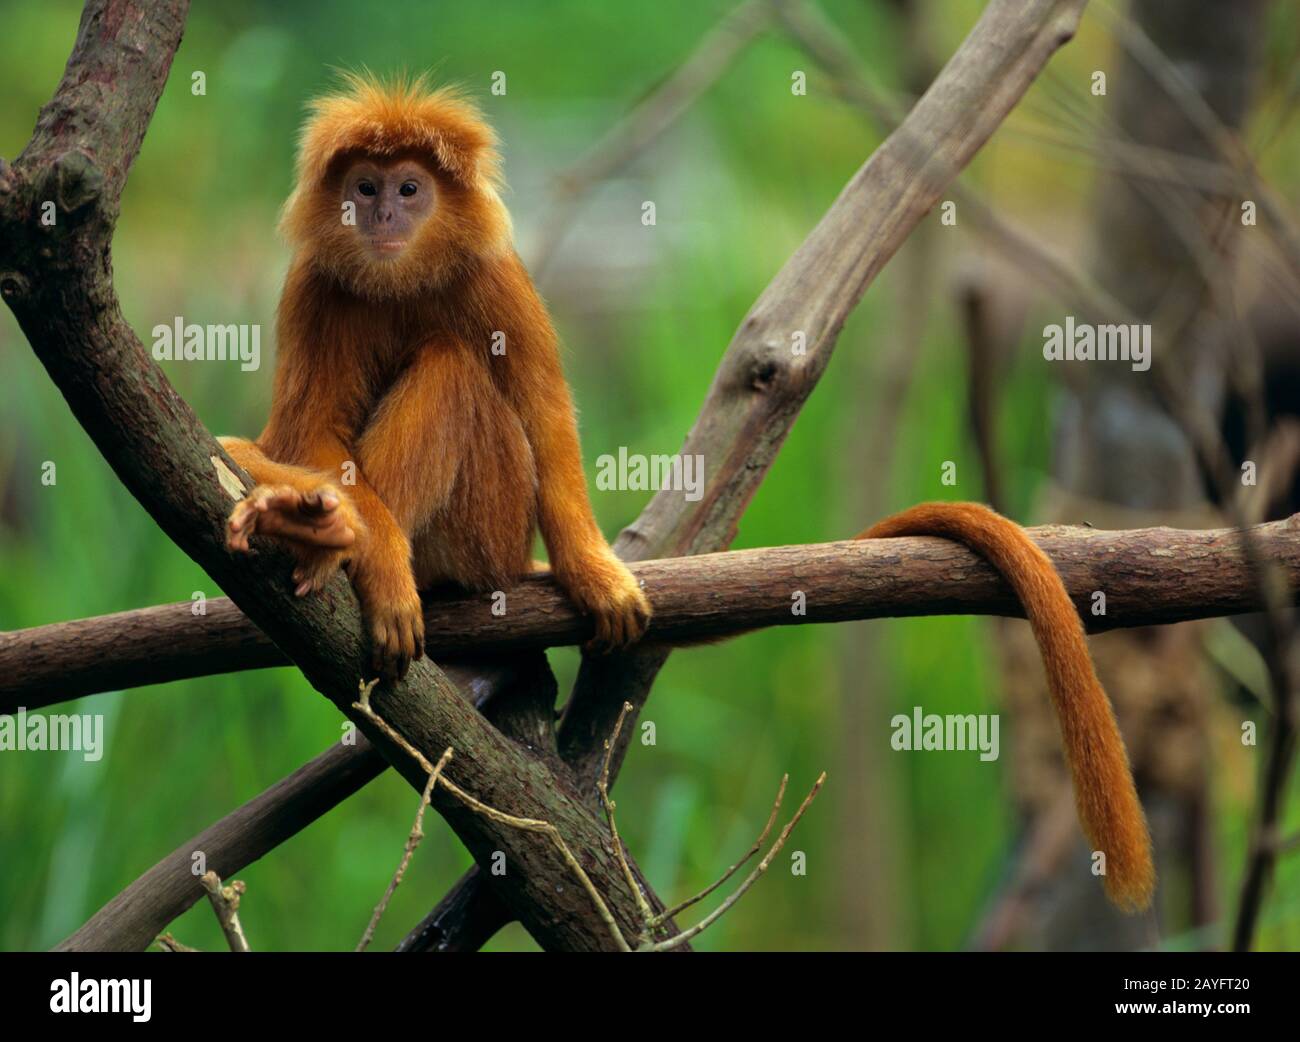 Dusky feuille-singe, langur spectaculaire (Presbytis melalophos), assis sur une branche, vue avant Banque D'Images